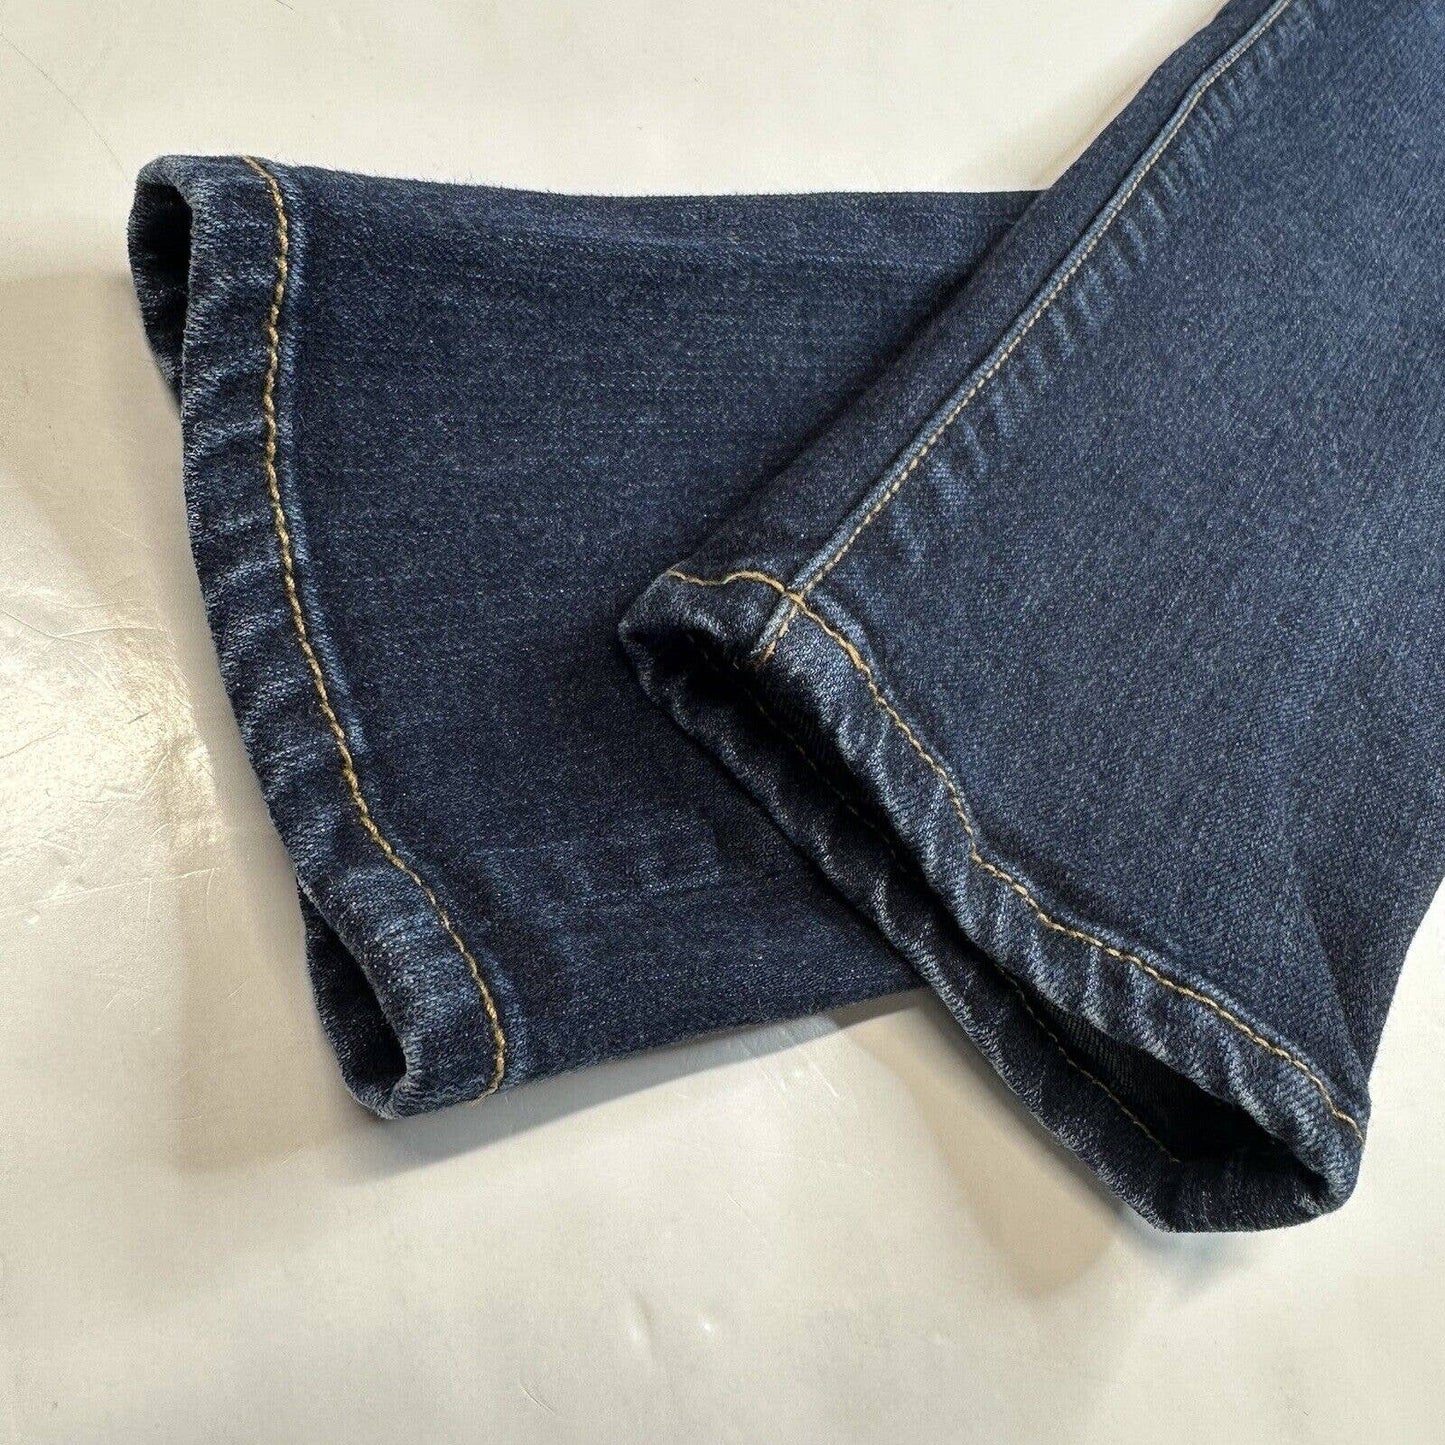 Abercrombie Fitch Skinny Jeans Womens 26/2 Lowrise Stretch Denim Blue Dark Wash